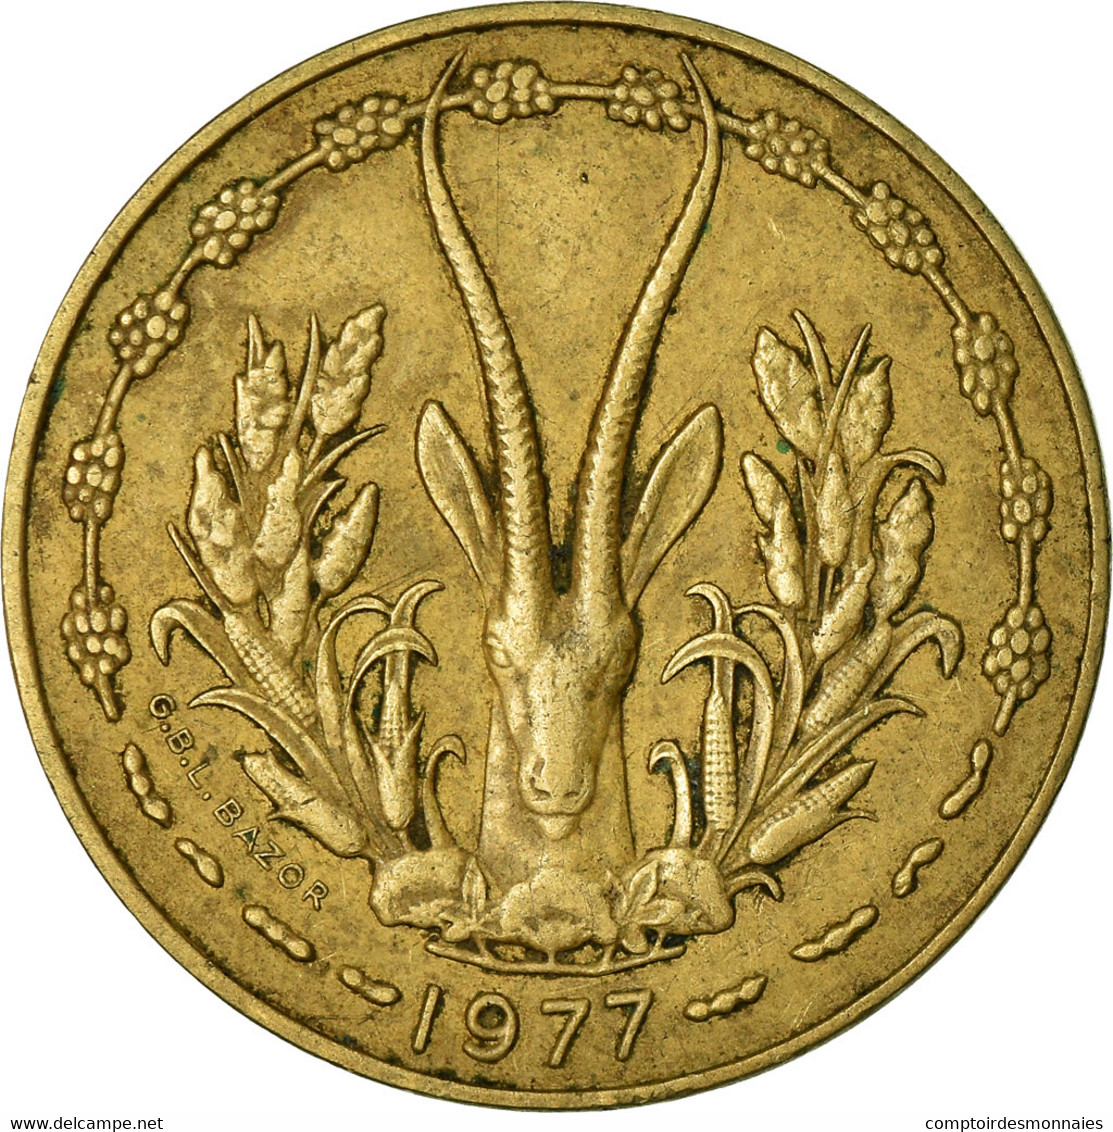 Monnaie, West African States, 10 Francs, 1977, TTB, Aluminum-Nickel-Bronze - Côte-d'Ivoire